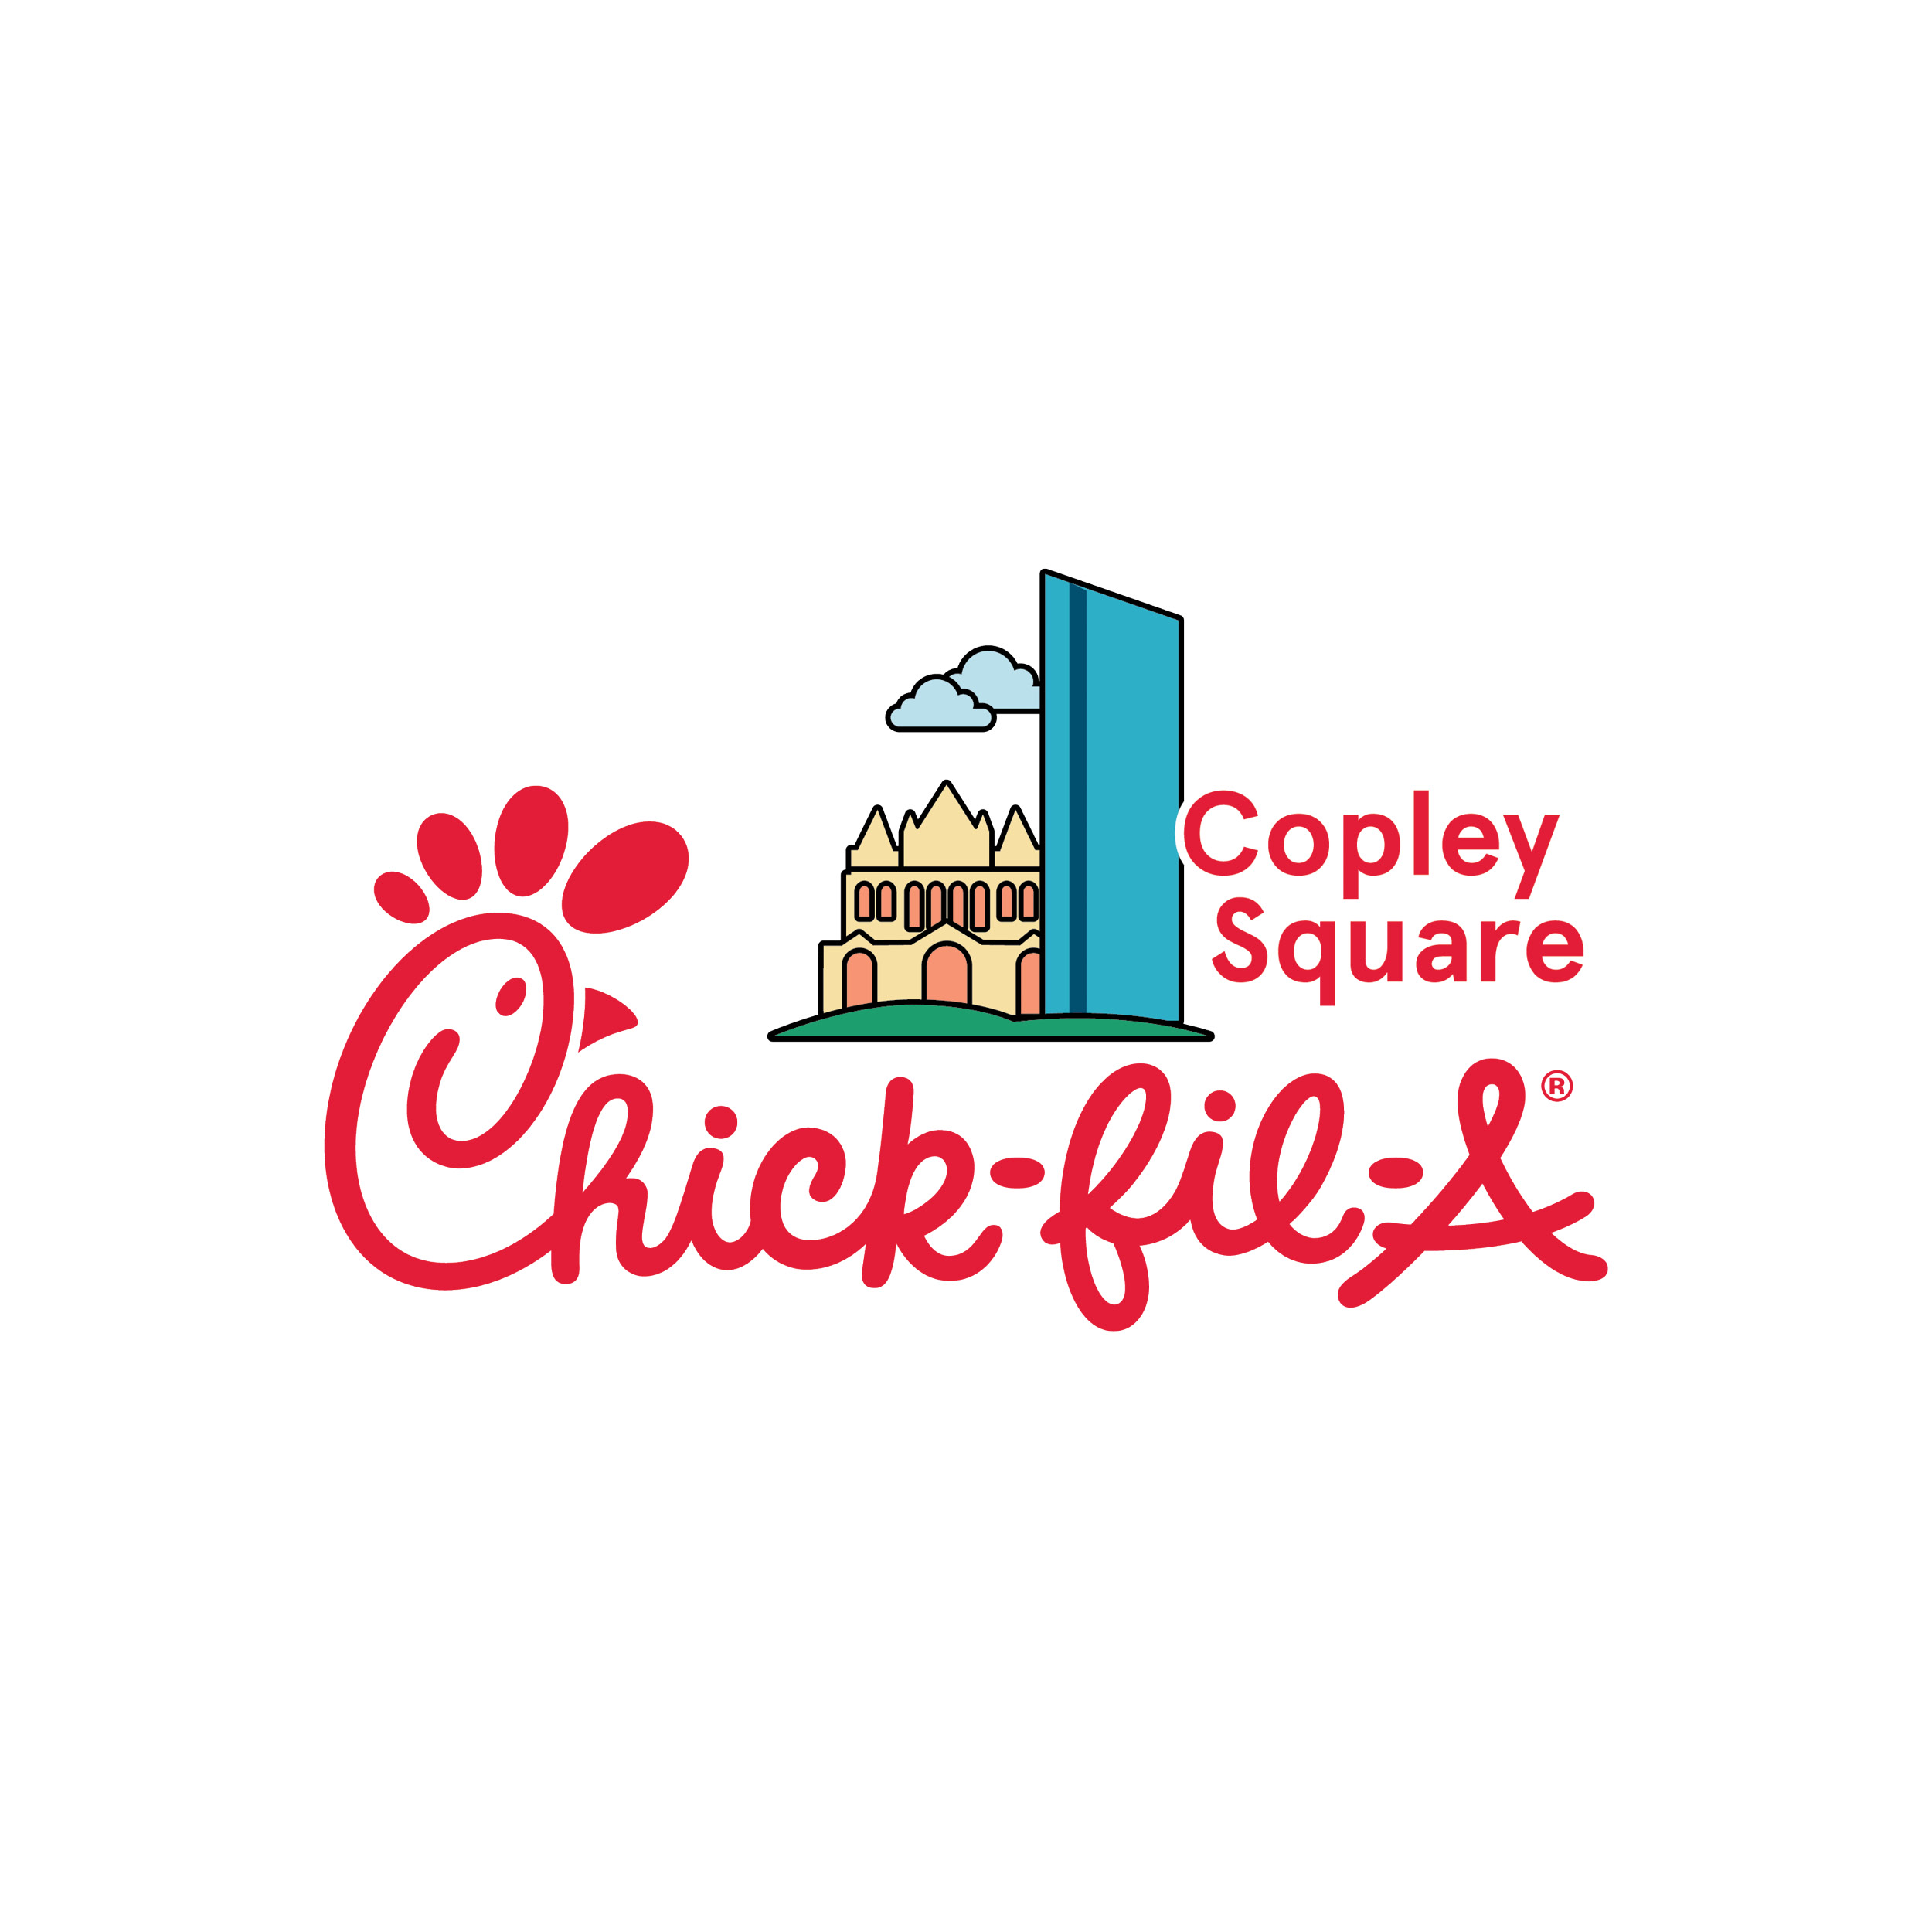 Chick-fil-A Copley Square